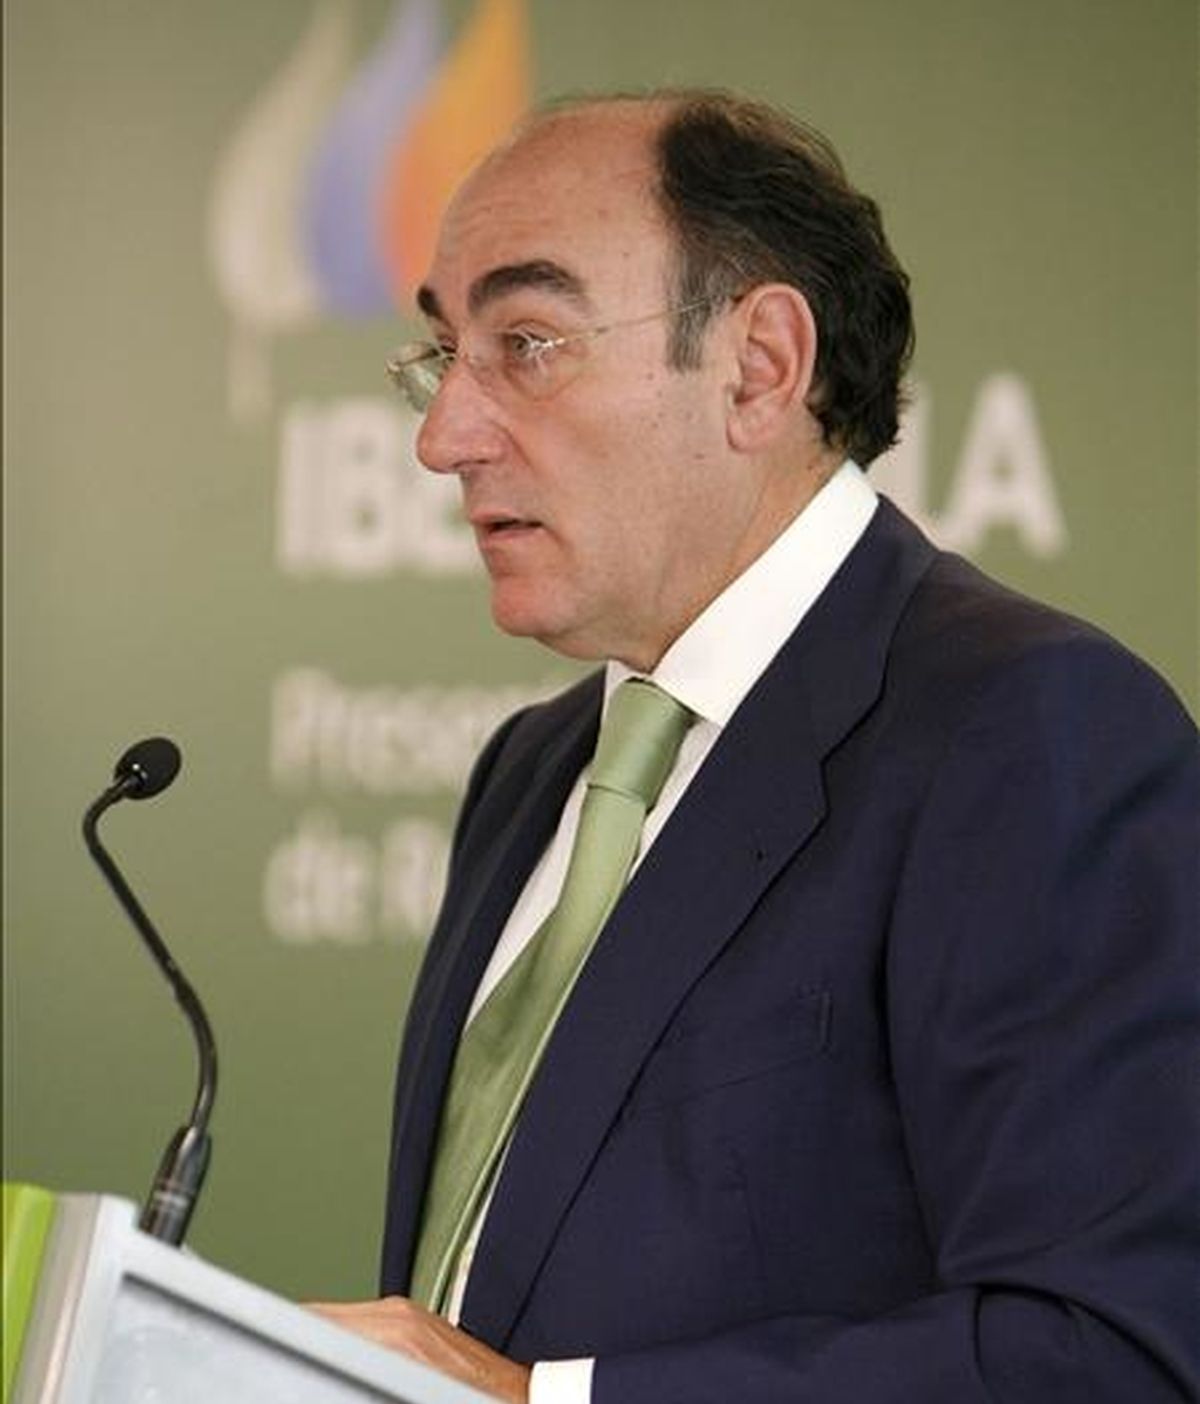 El presidente de Iberdrola, Ignacio Sánchez Galán, durante la presentación de los resultados en una conference call con analistas, después de que la compañía los haya publicado antes de la apertura del mercado ante la CNMV. EFE